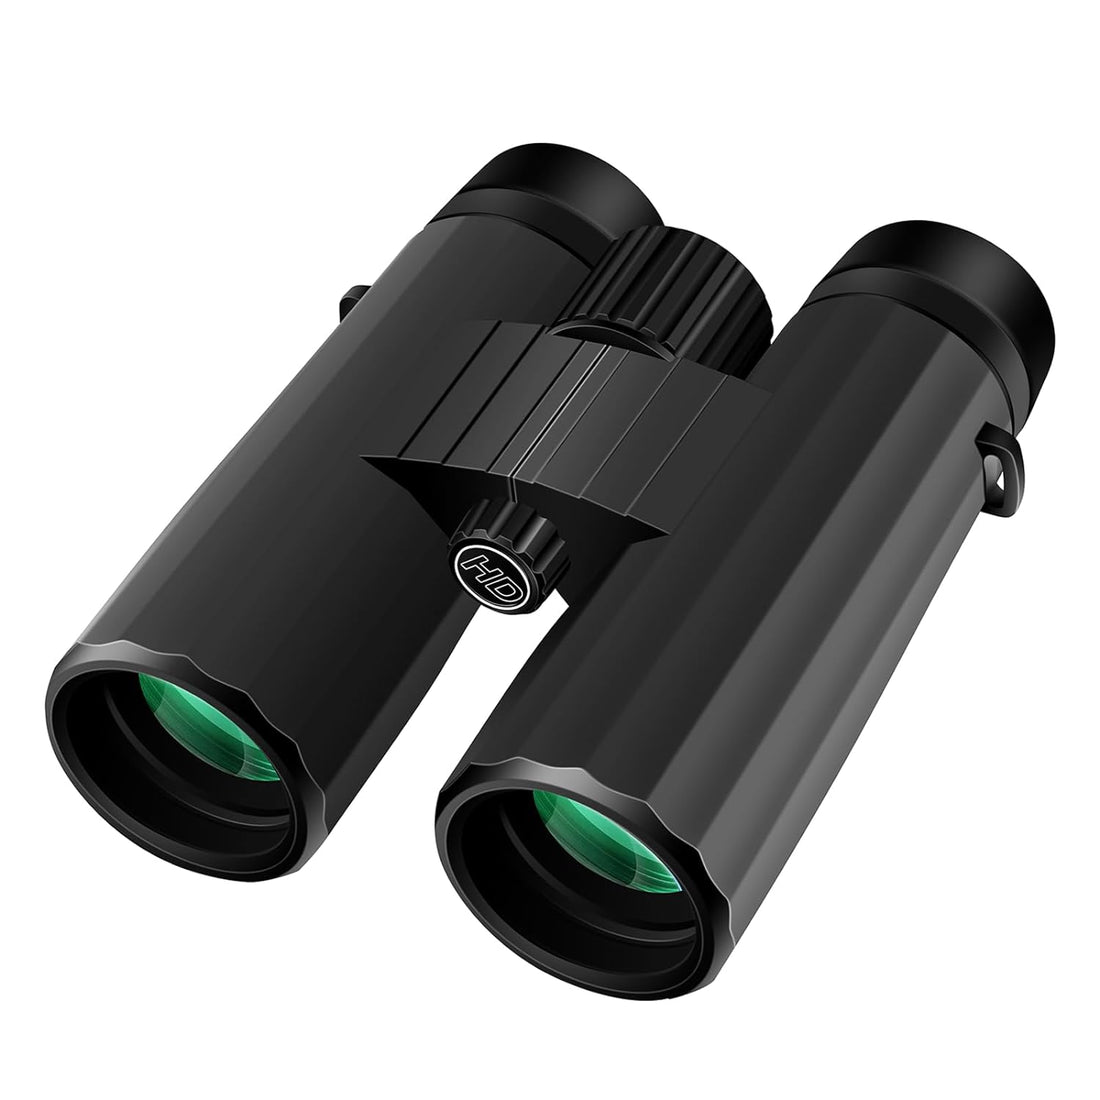 Herwicm 10x42 Binoculars, Outdoor and Bird-Watching Binoculars, Full Multilayer Coating with BaK-4 Prism, for Bird-Watching Cruise Trips Binoculars for Adults